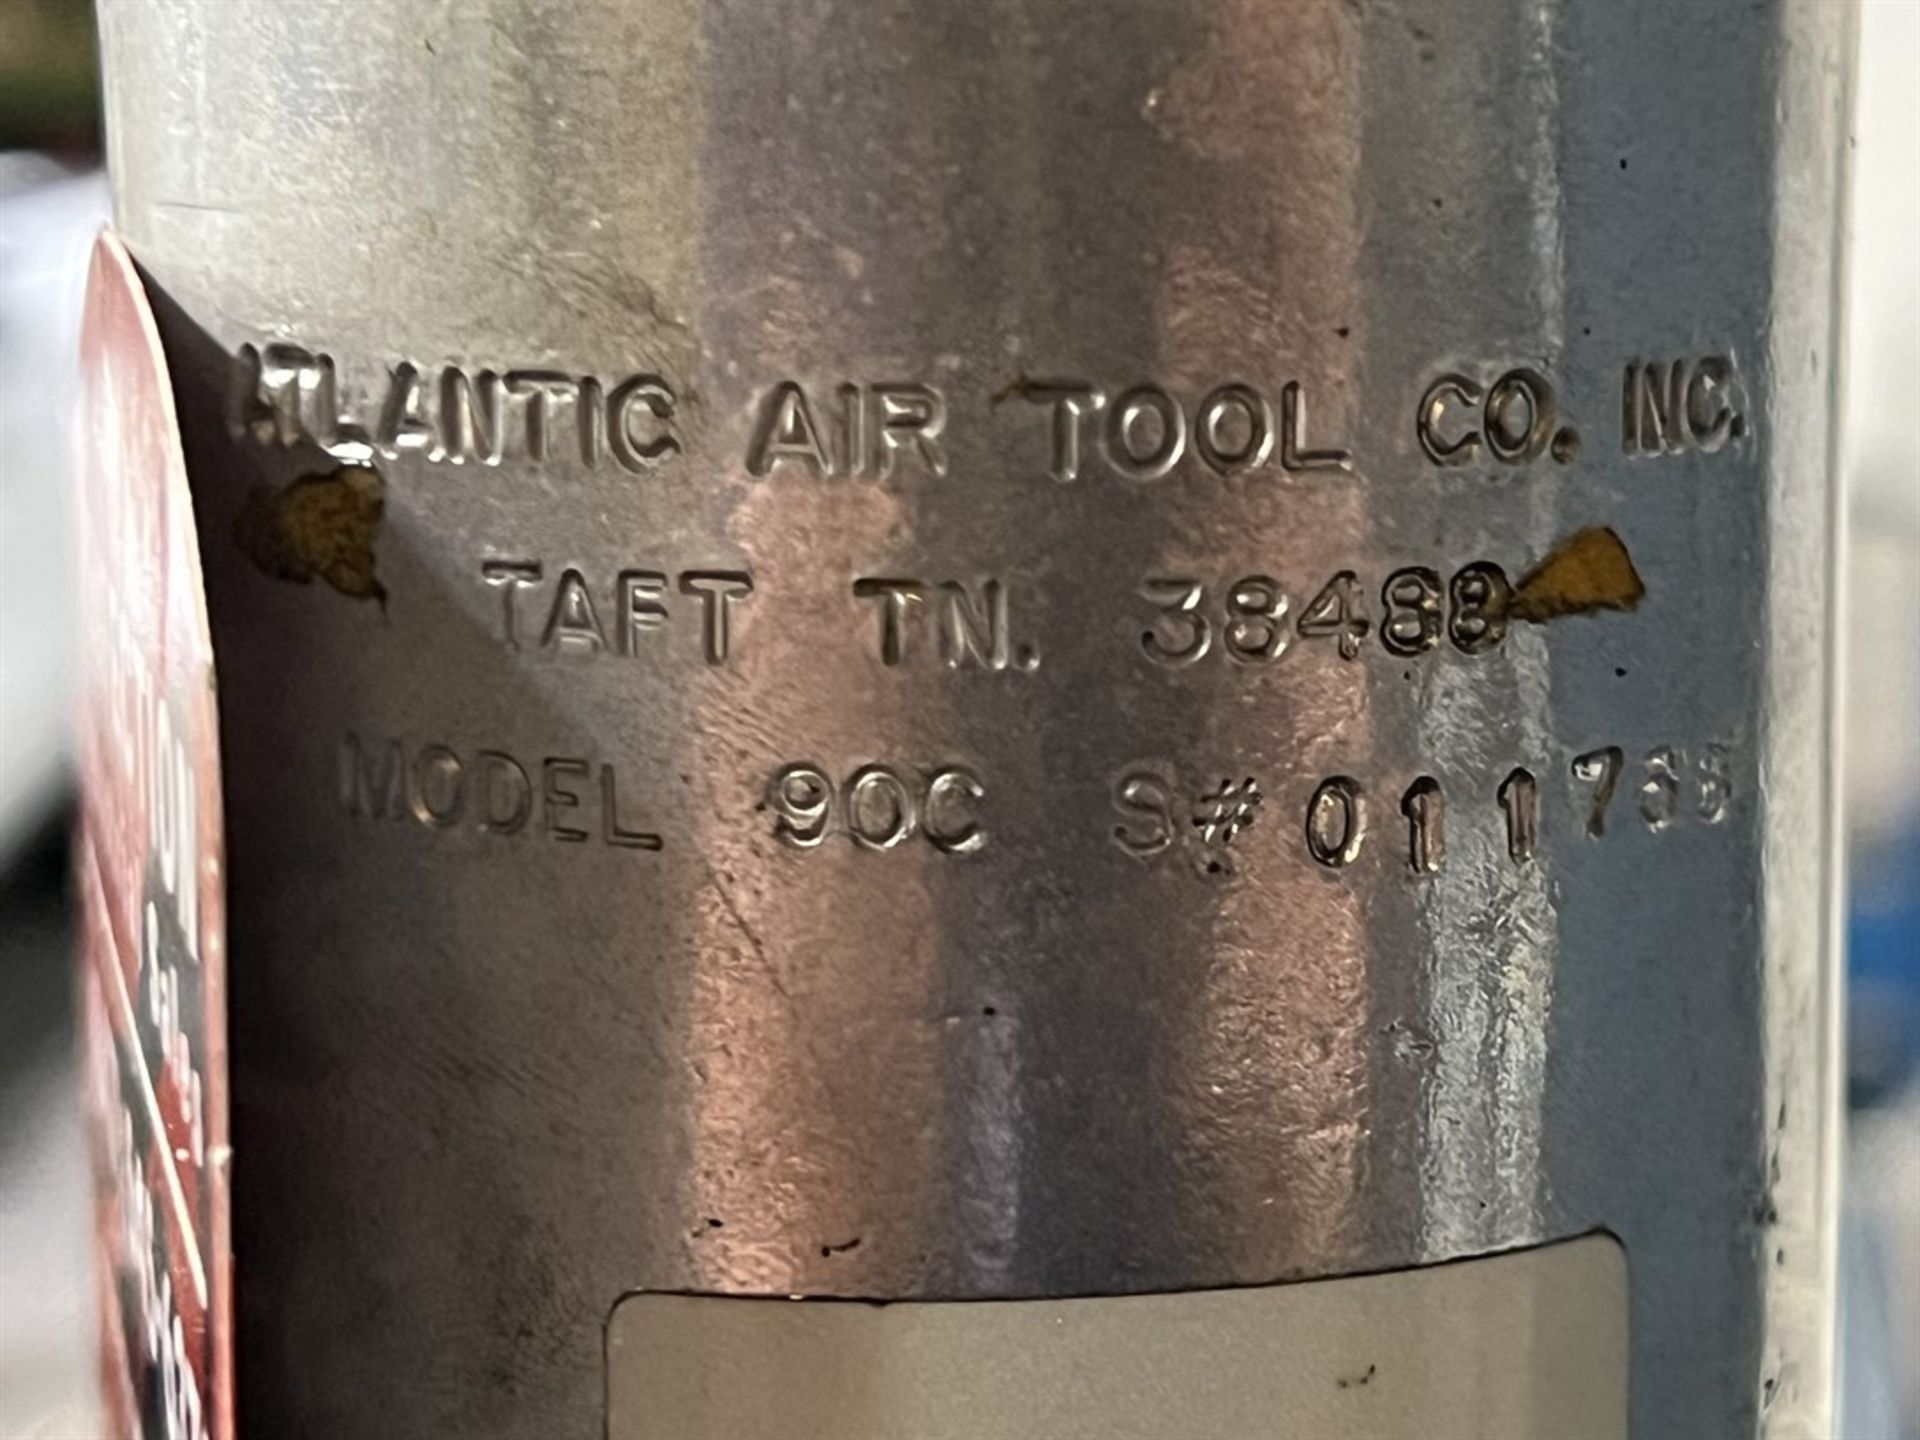 ATLANTIC AIR TOOL 90C Pneumatic Riveter, s/n 011766 - Image 4 of 4